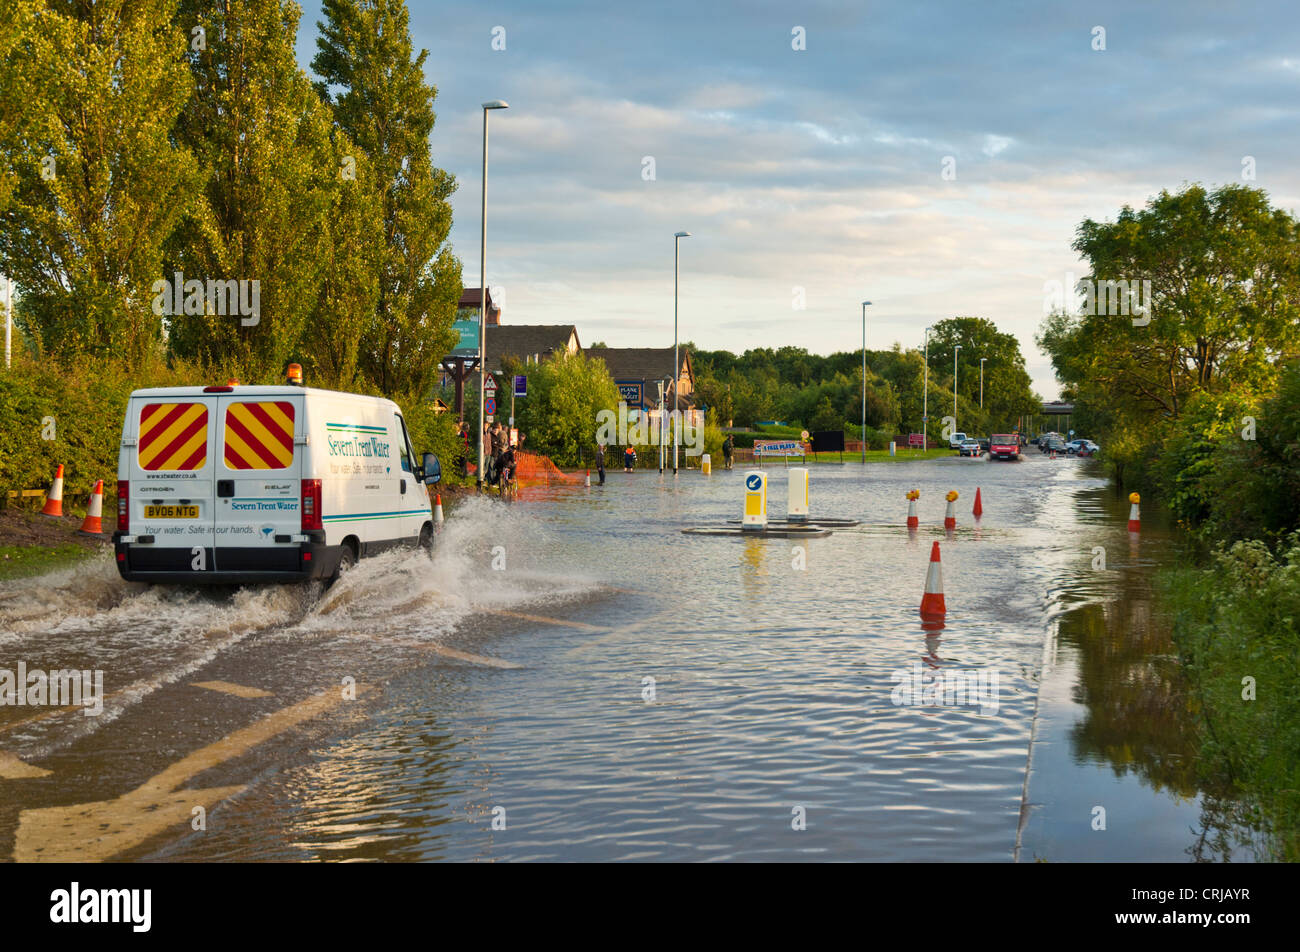 2007 Floods UN furgone d'acqua Severn trent che attraversa l'alluvione Acqua su una strada chiusa B6540 a Sawley Marina Sawley Derbyshire Inghilterra Regno Unito GB Europa Foto Stock